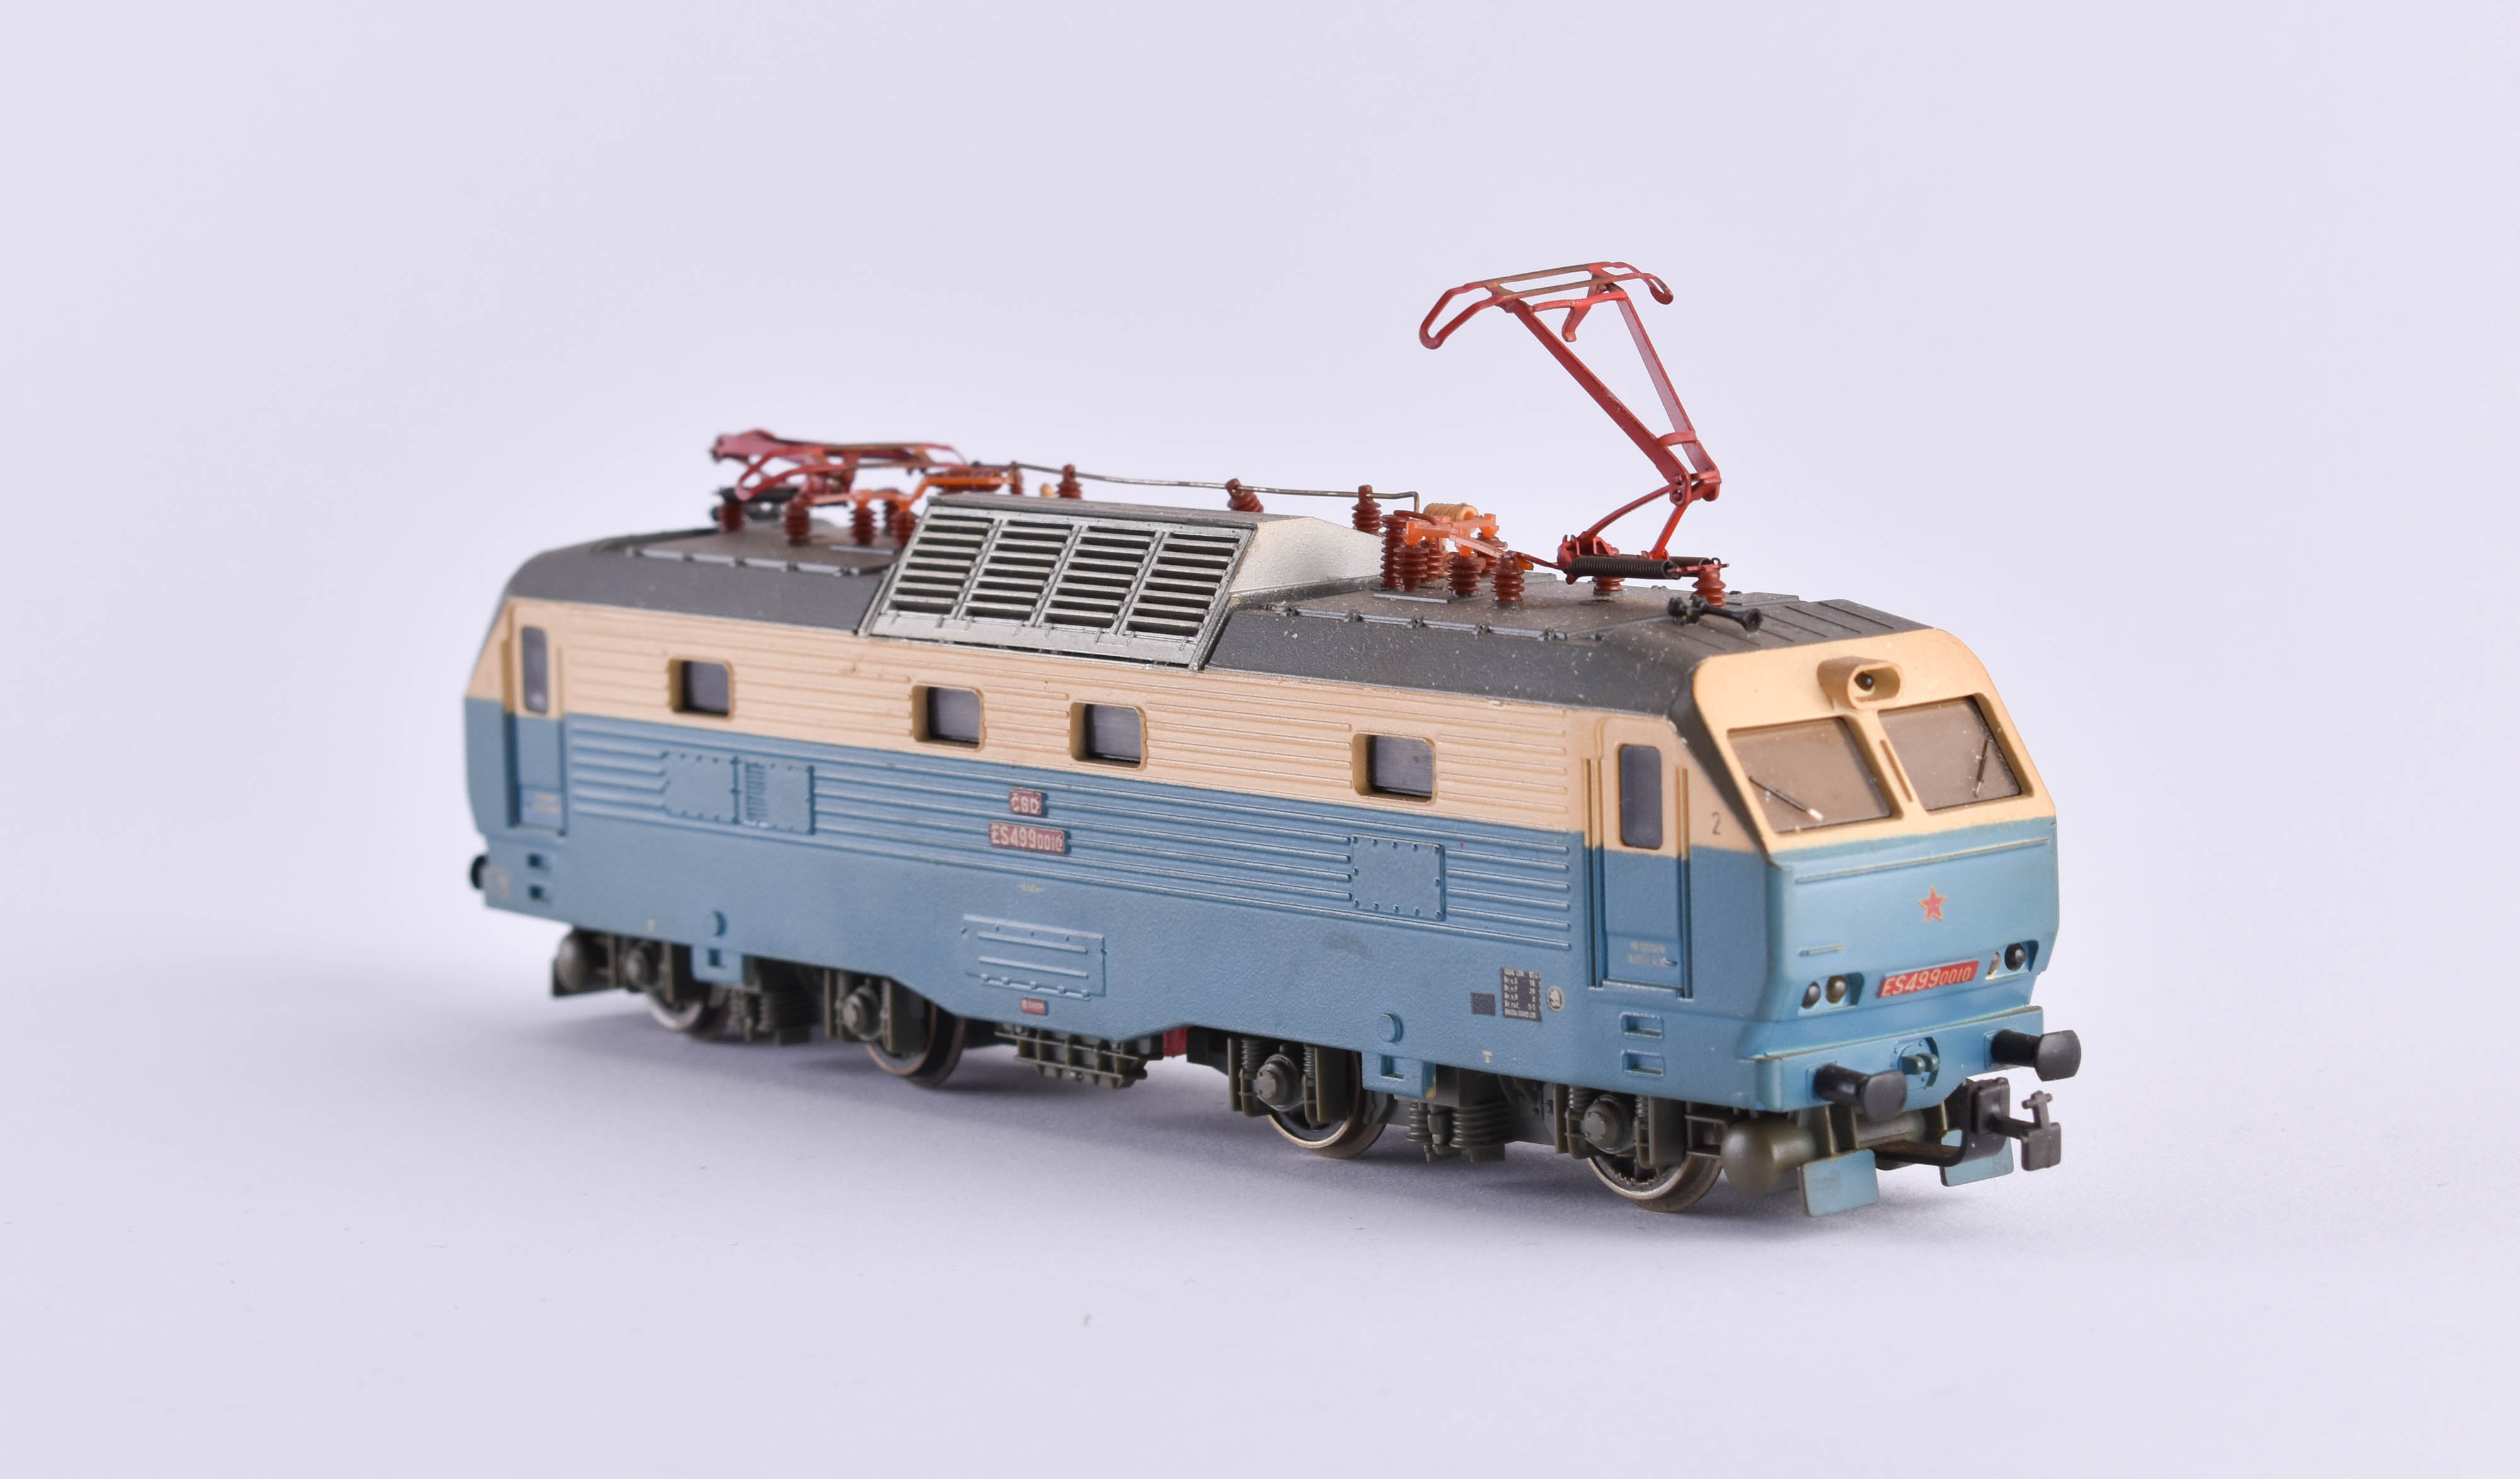 Locomotive ES 499 0010 CSD- Piko